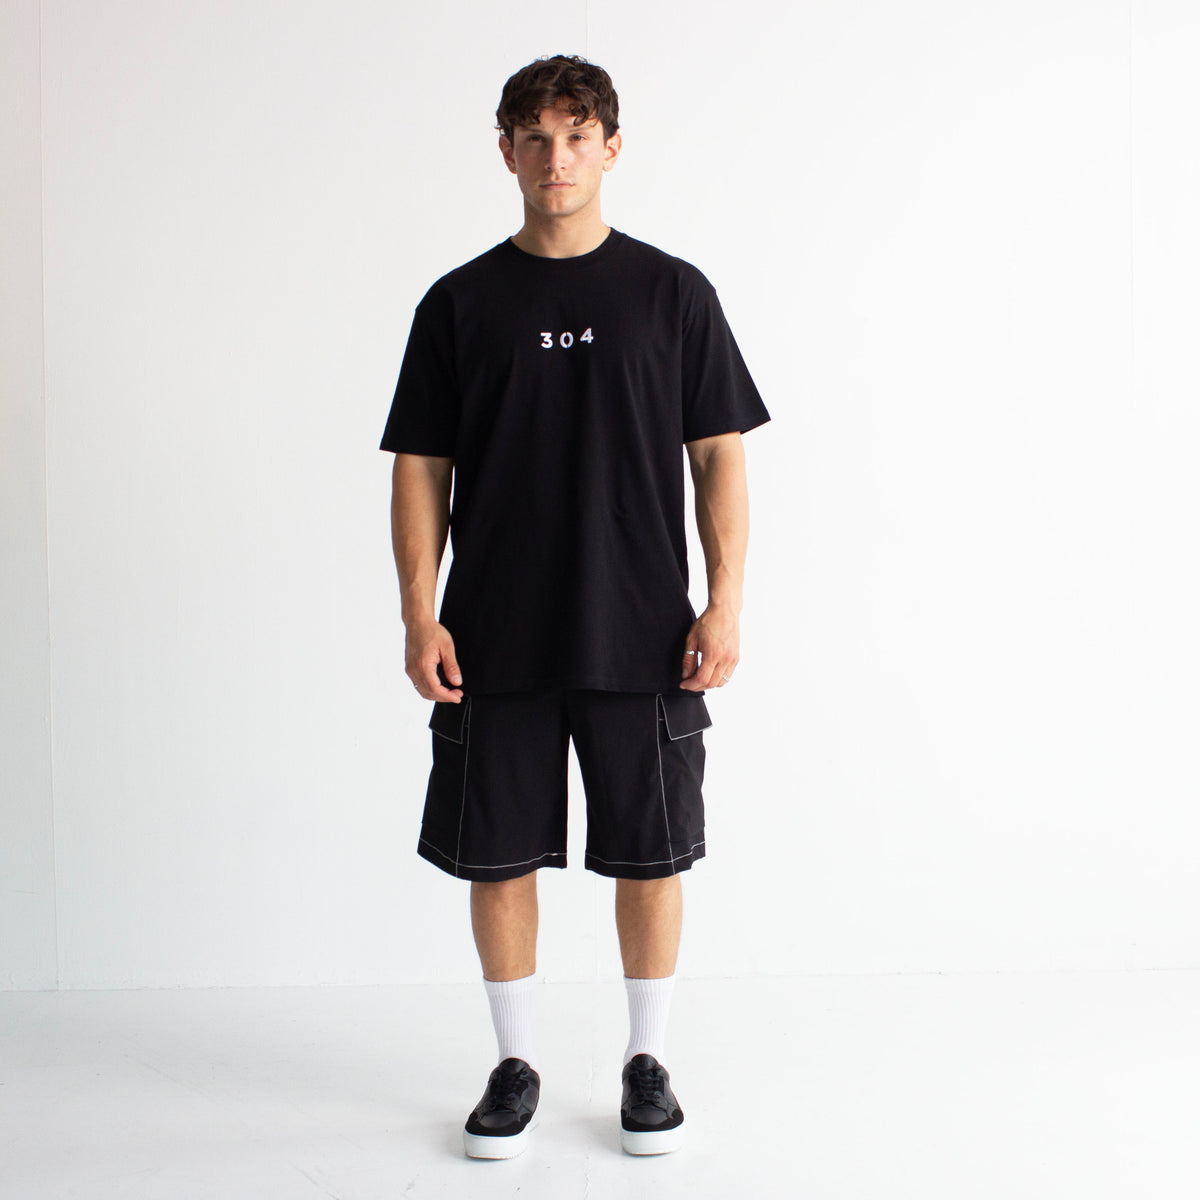 304 Clothing | 304 Mens Enzo Core T-shirt Black | 304 Mens